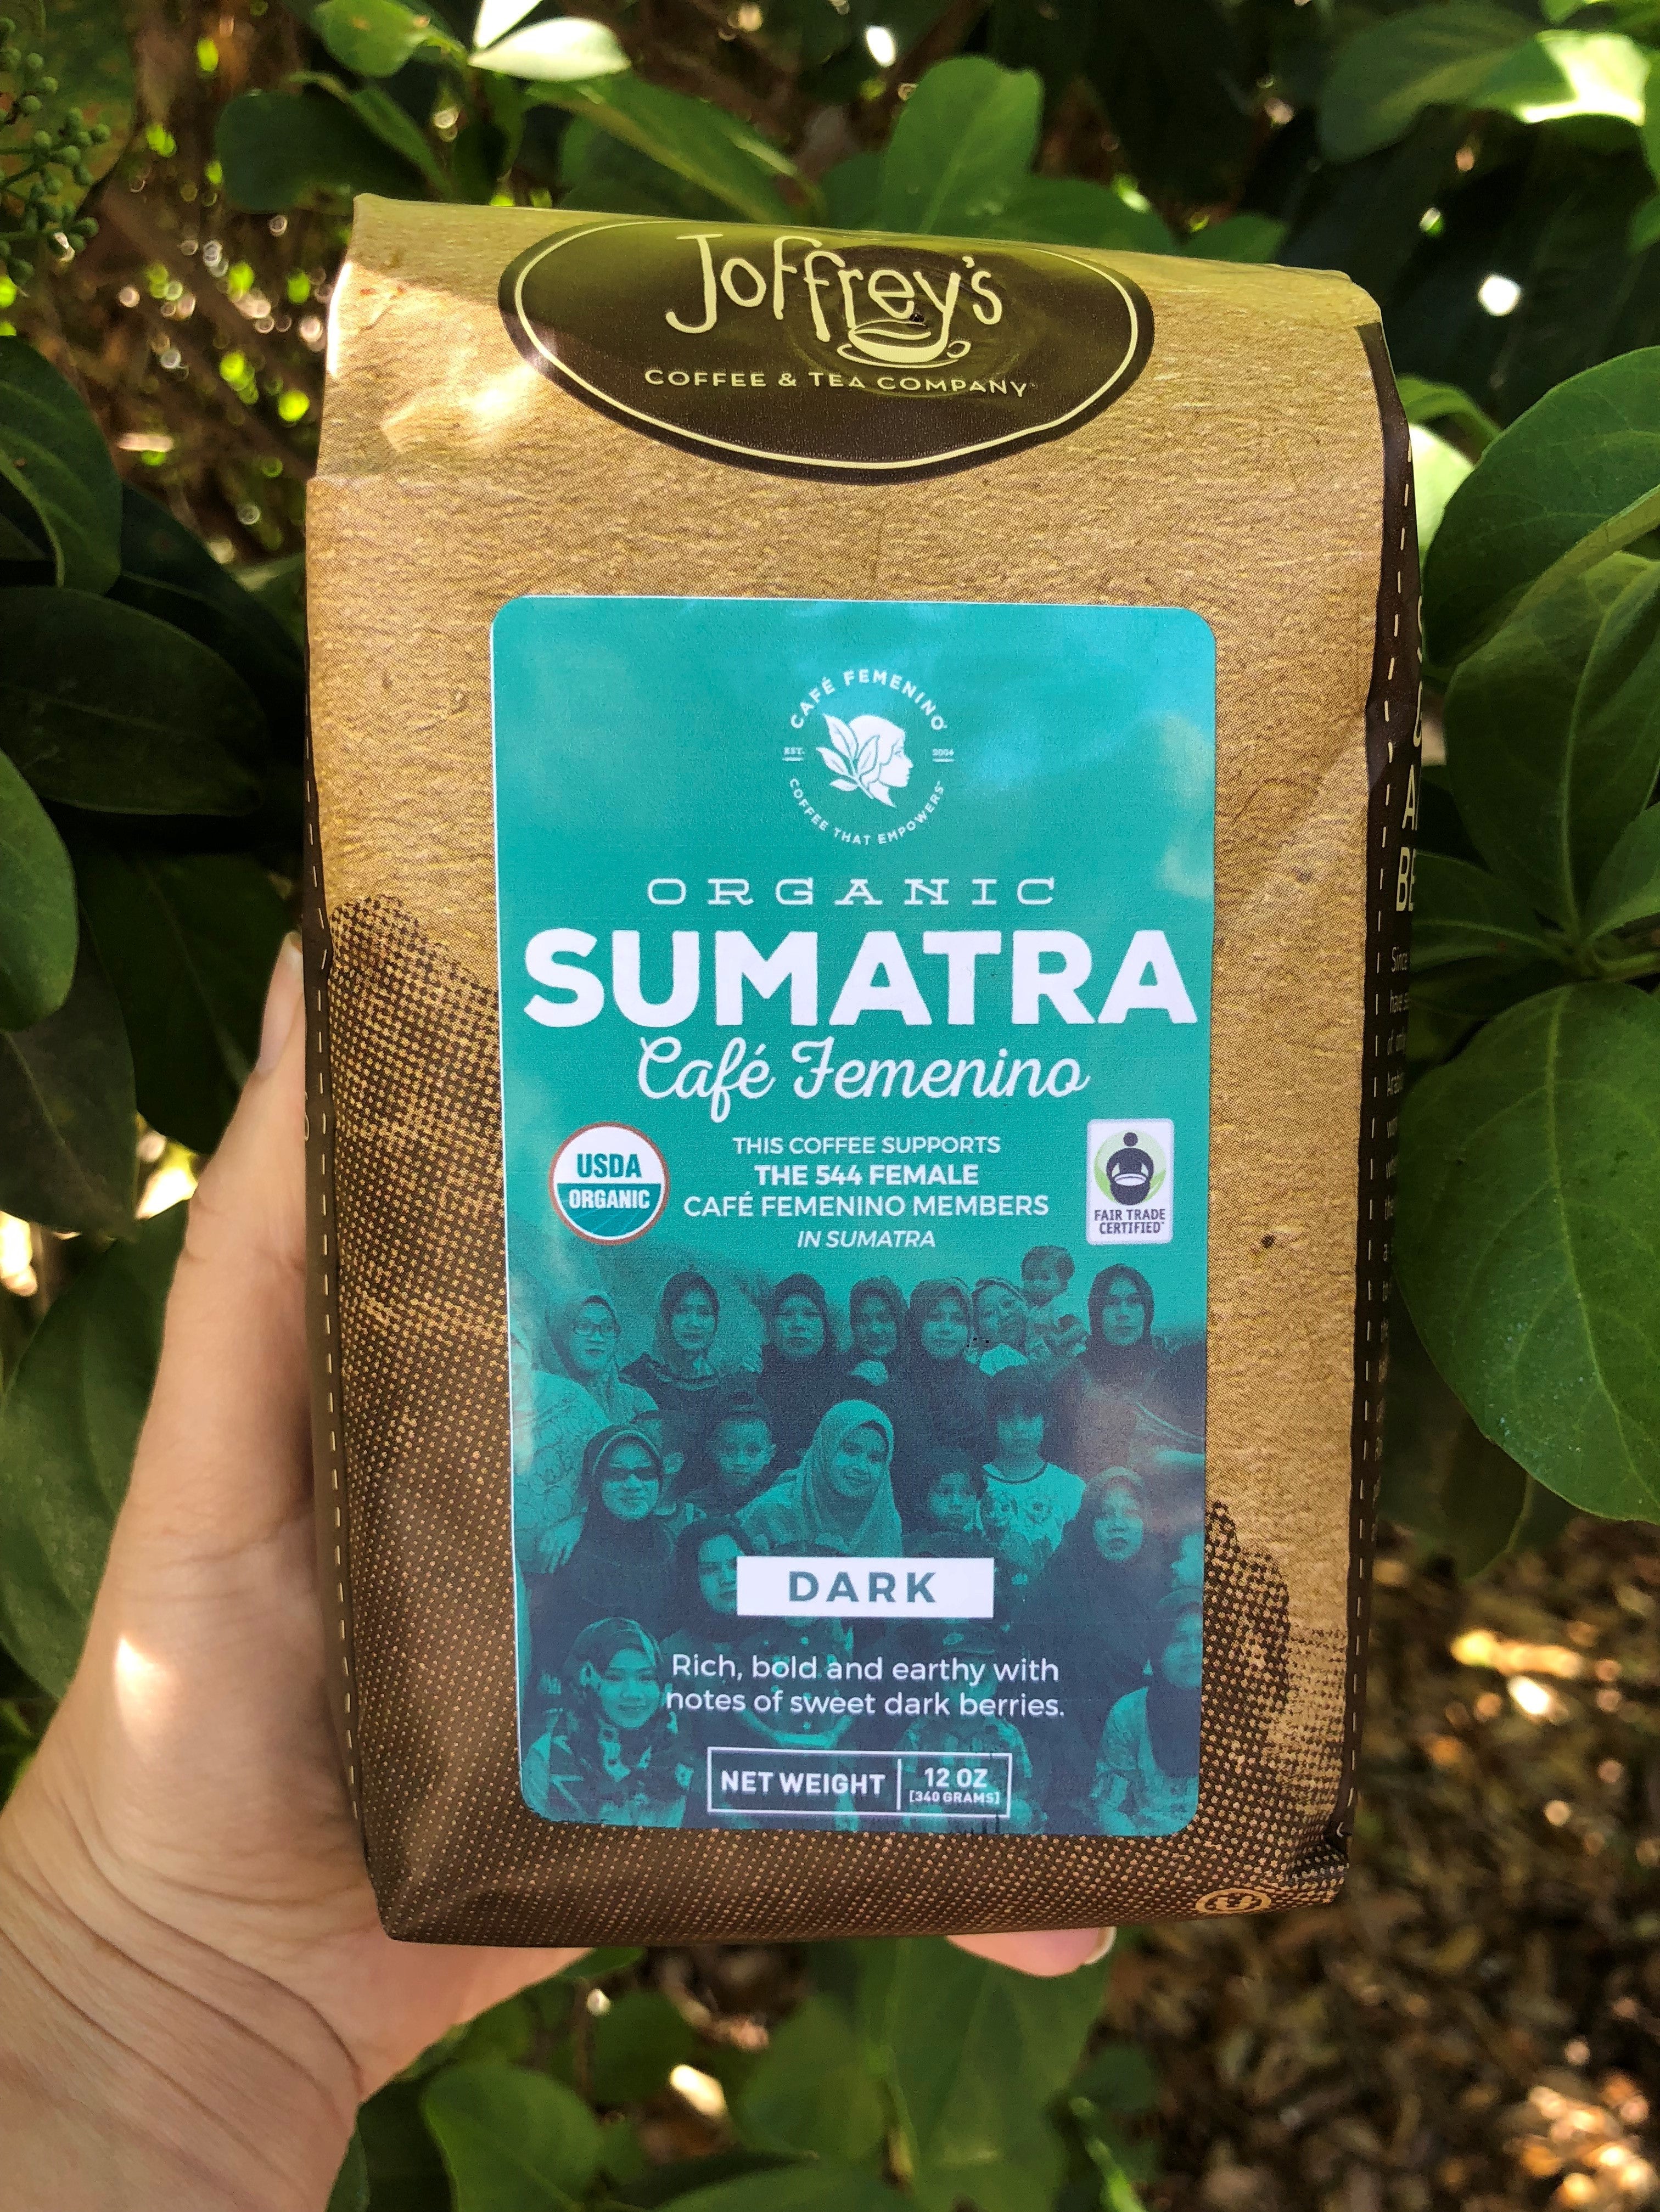 Traveling to Sumatra - The Cafe Femenino Foundation